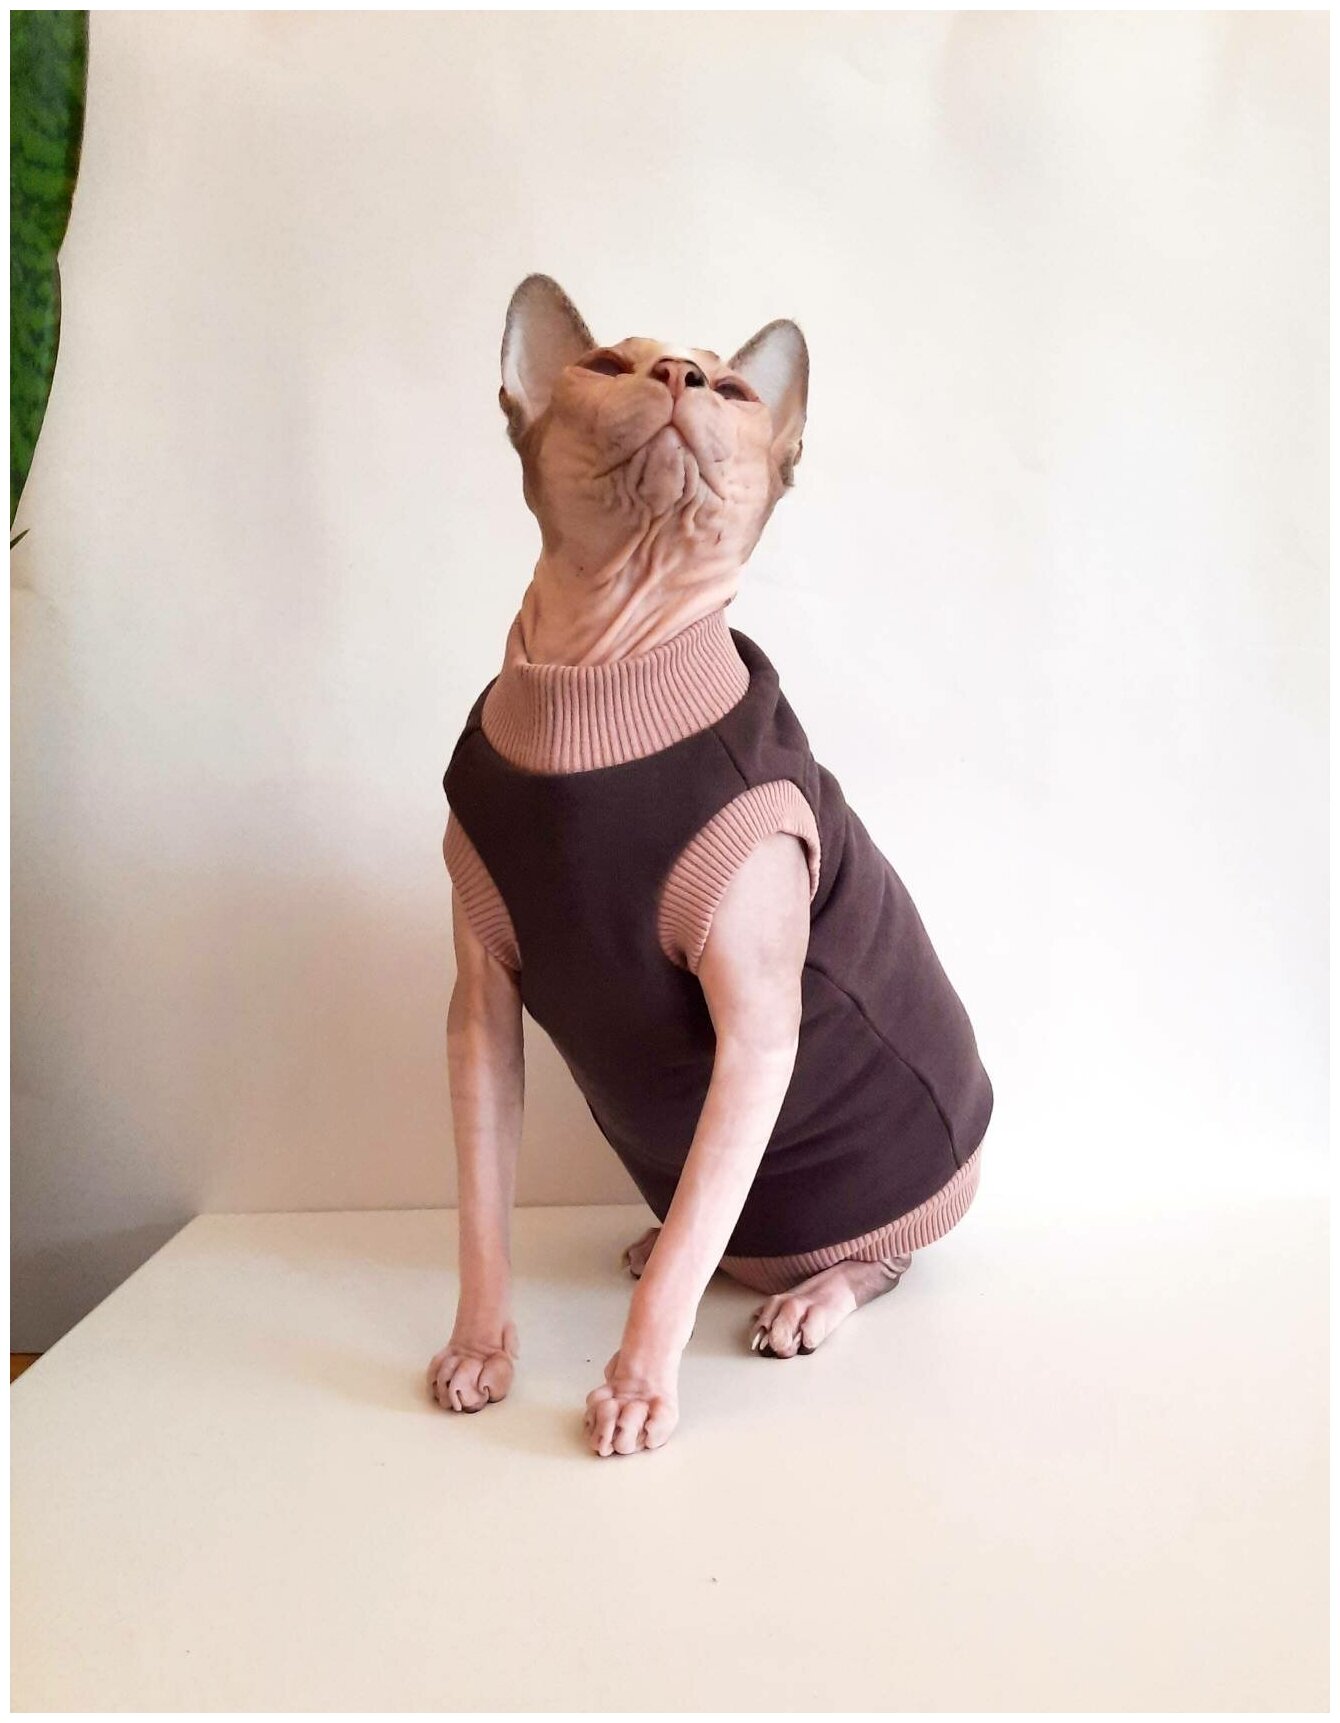 Свитшот для кошек, размер 35 (длина спины 35см), цвет шоколад+беж / толстовка свитшот свитер для кошек сфинкс / одежда для животных - фотография № 9